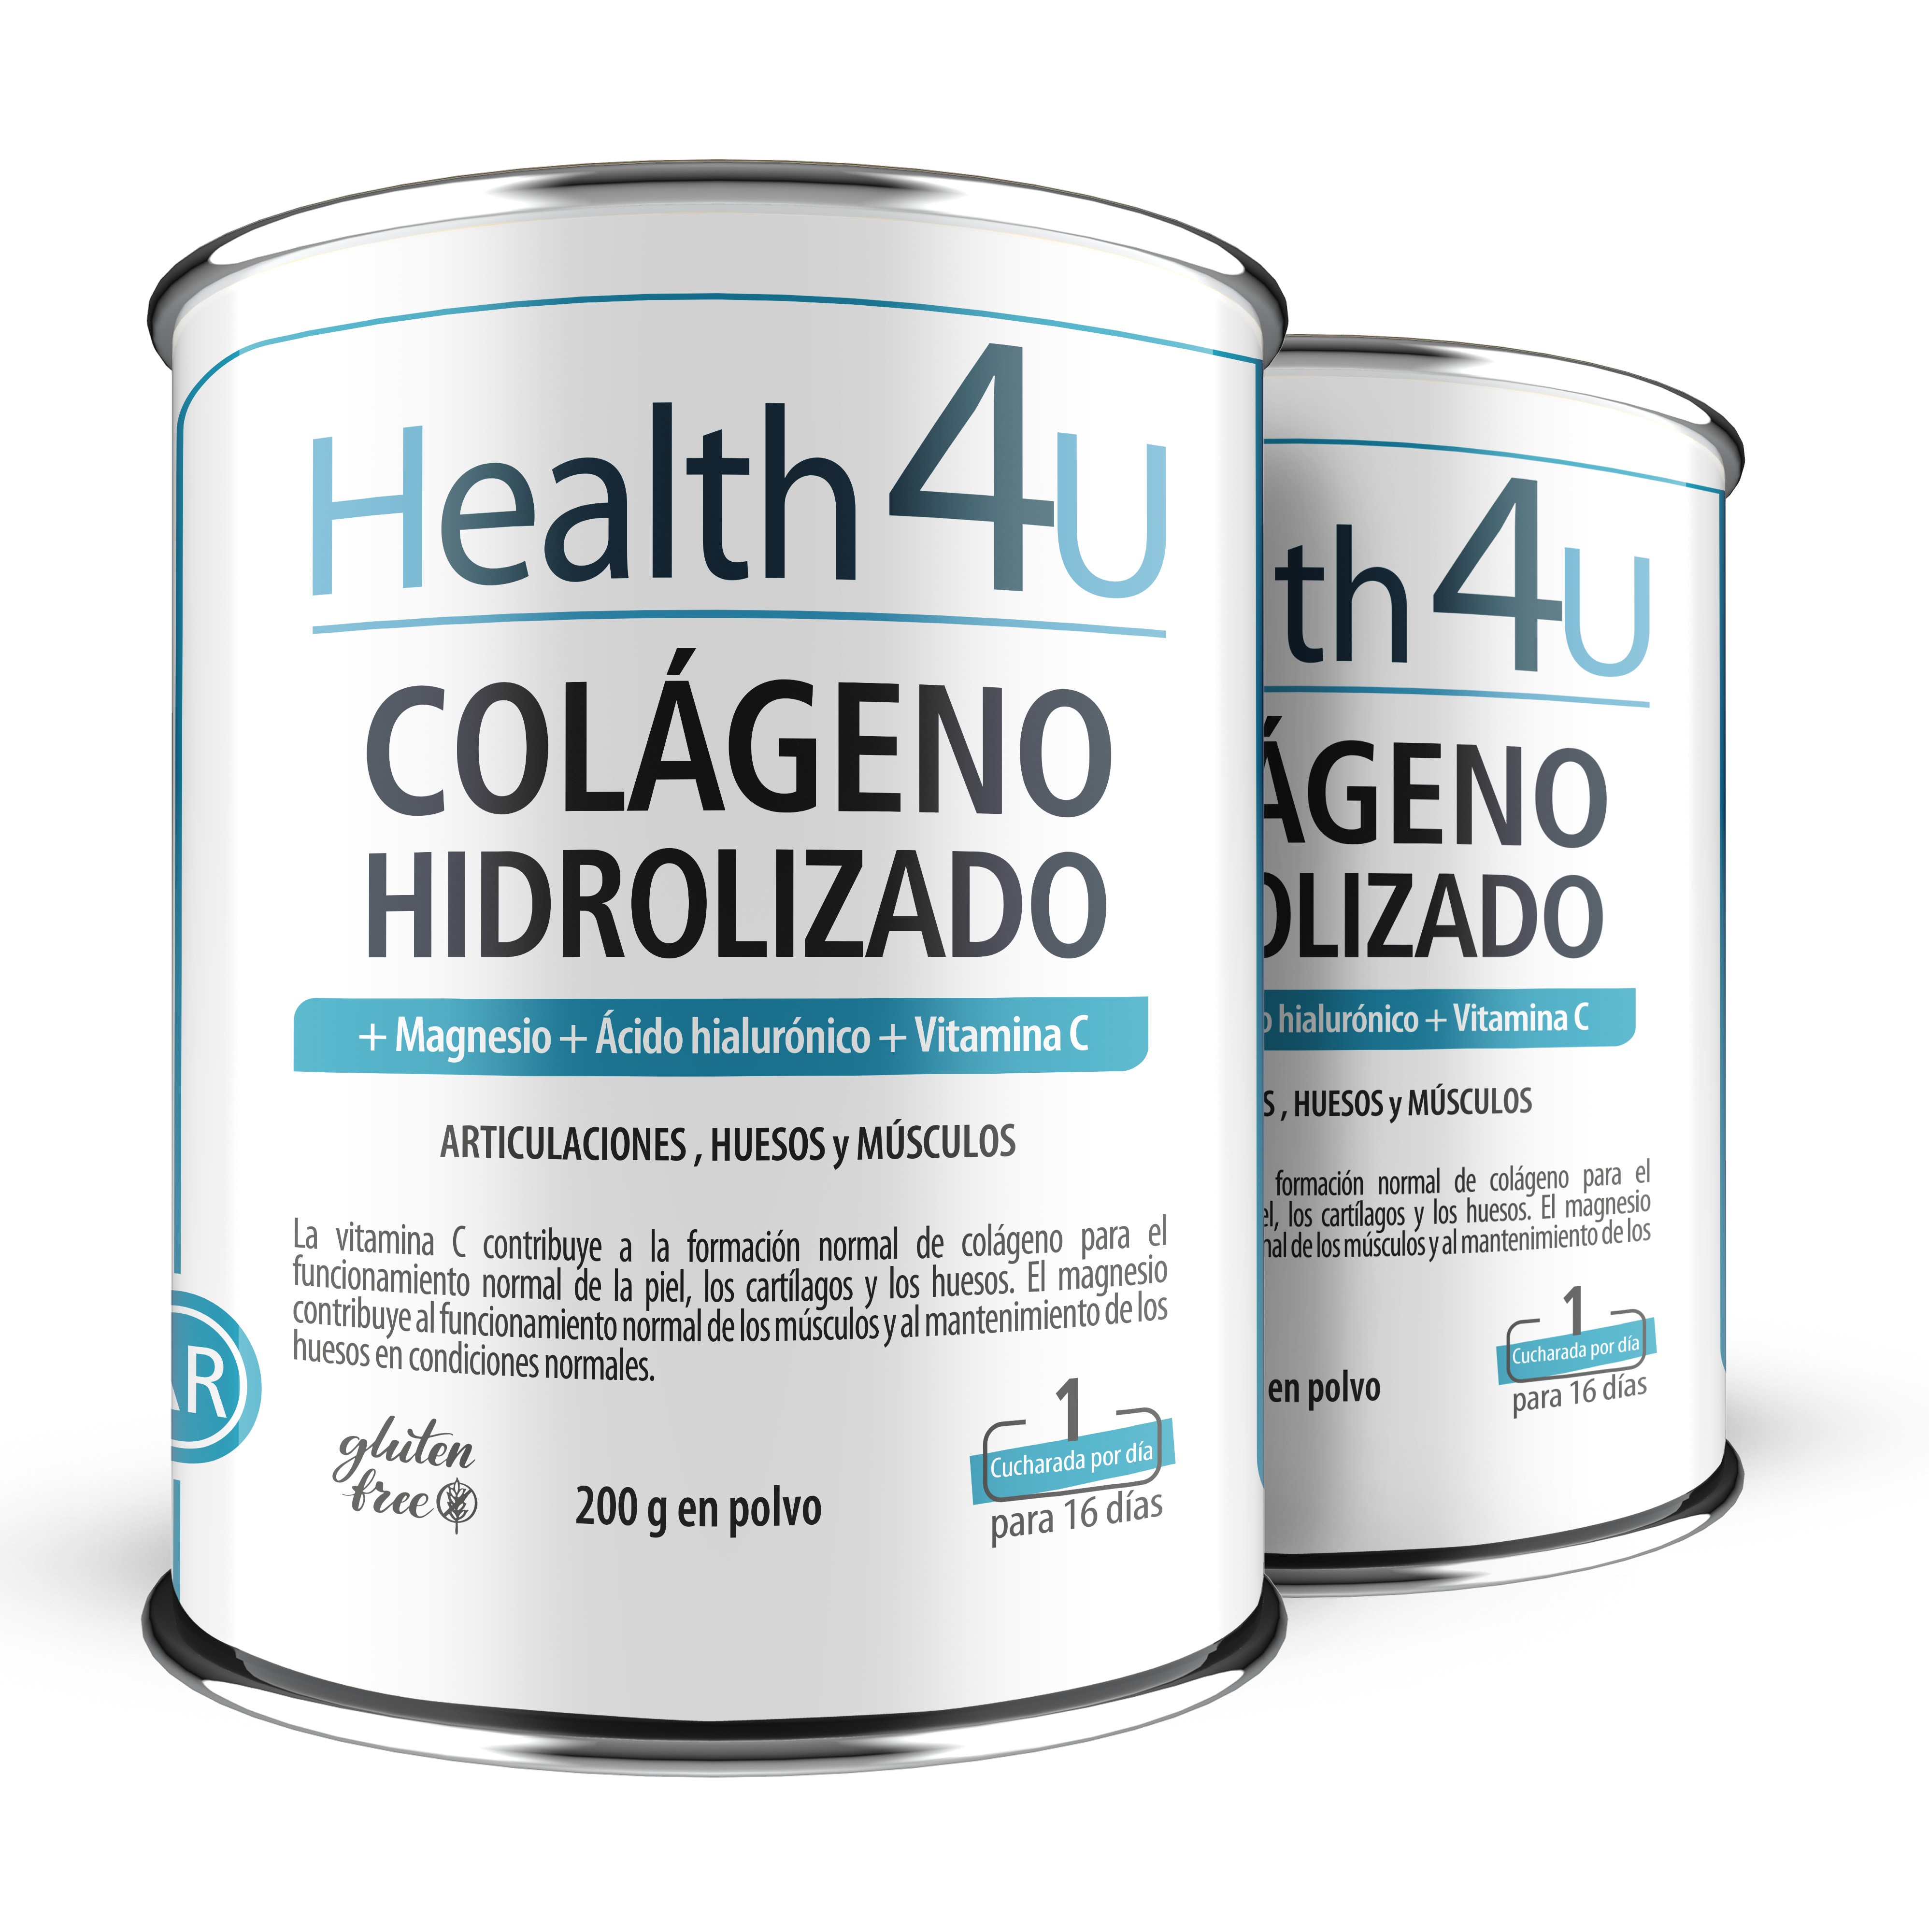 Carbonato De Magnesio En Polvo, 110 gr - health-4u